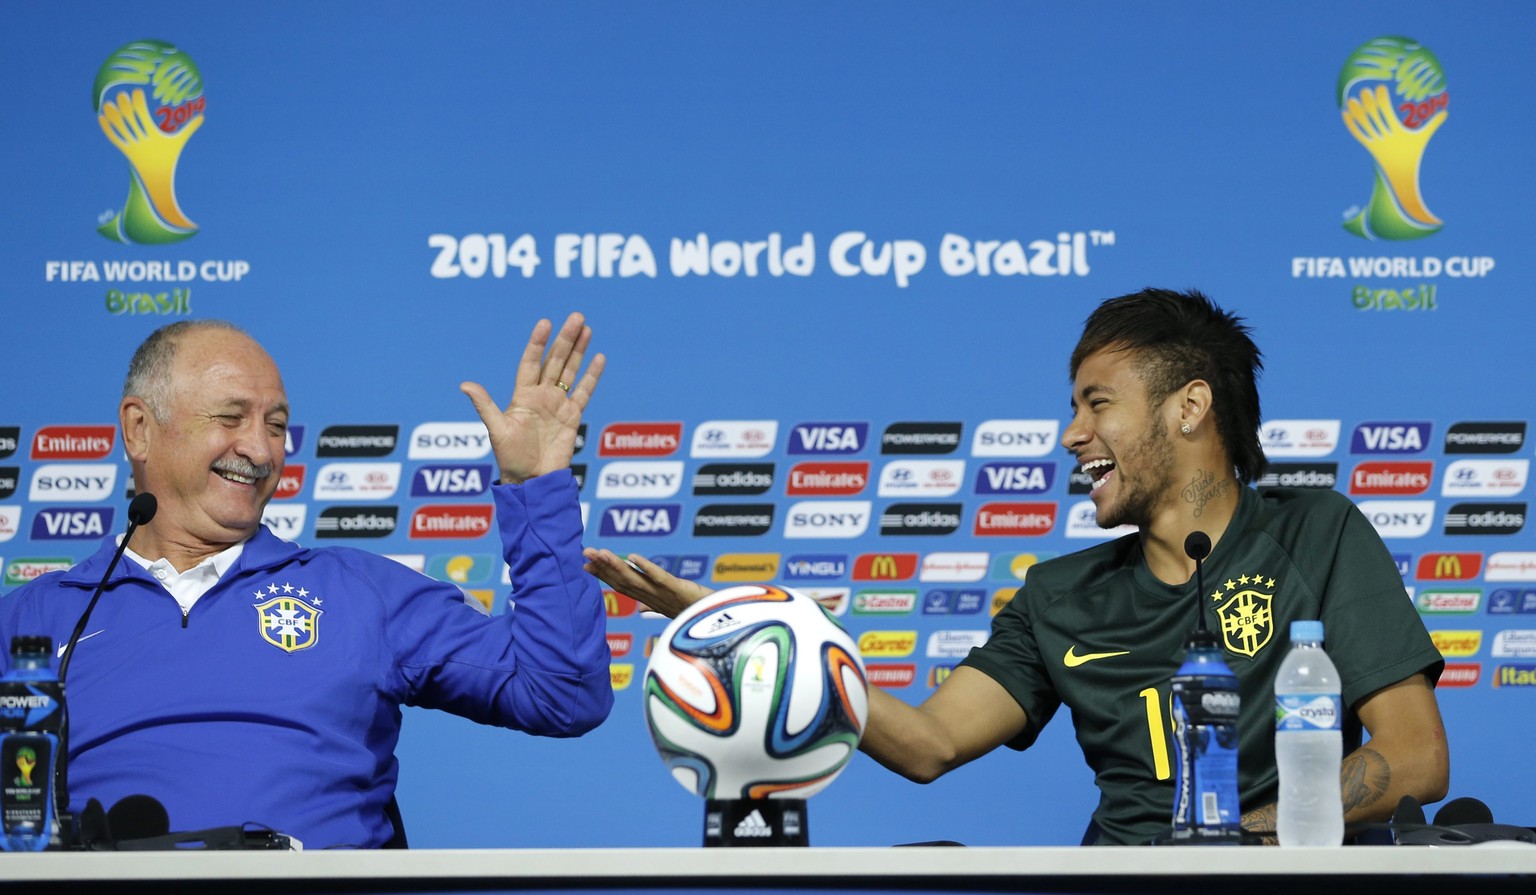 Gute Stimmung bei Felipe Scolari und Neymar vor der WM.